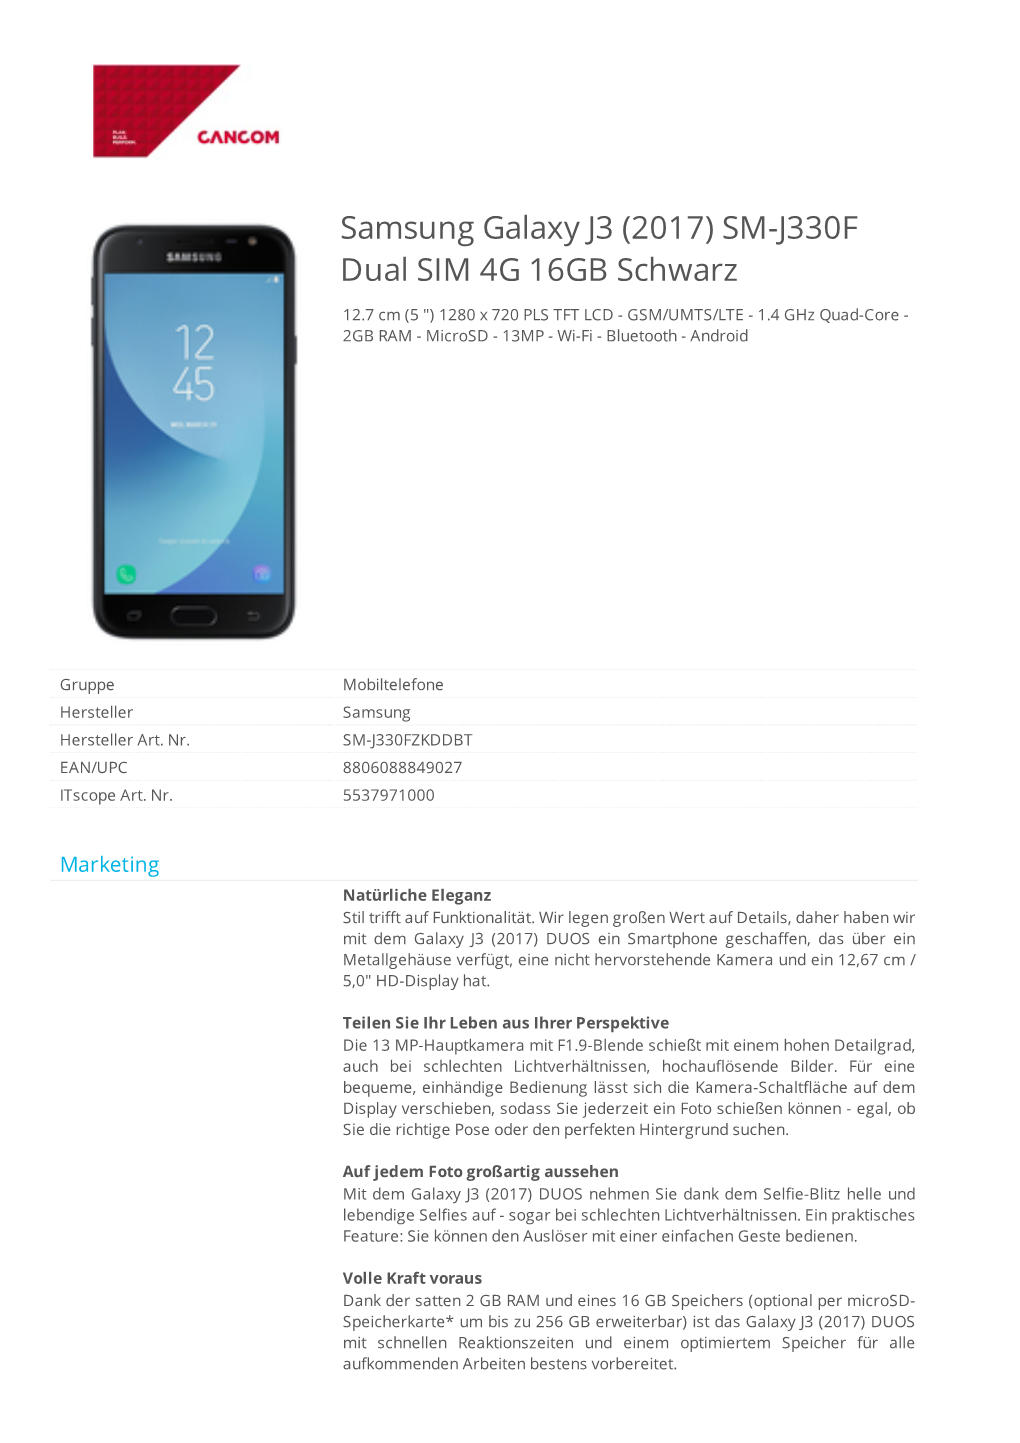 Samsung Galaxy J3 (2017) SM-J330F Dual SIM 4G 16GB Schwarz